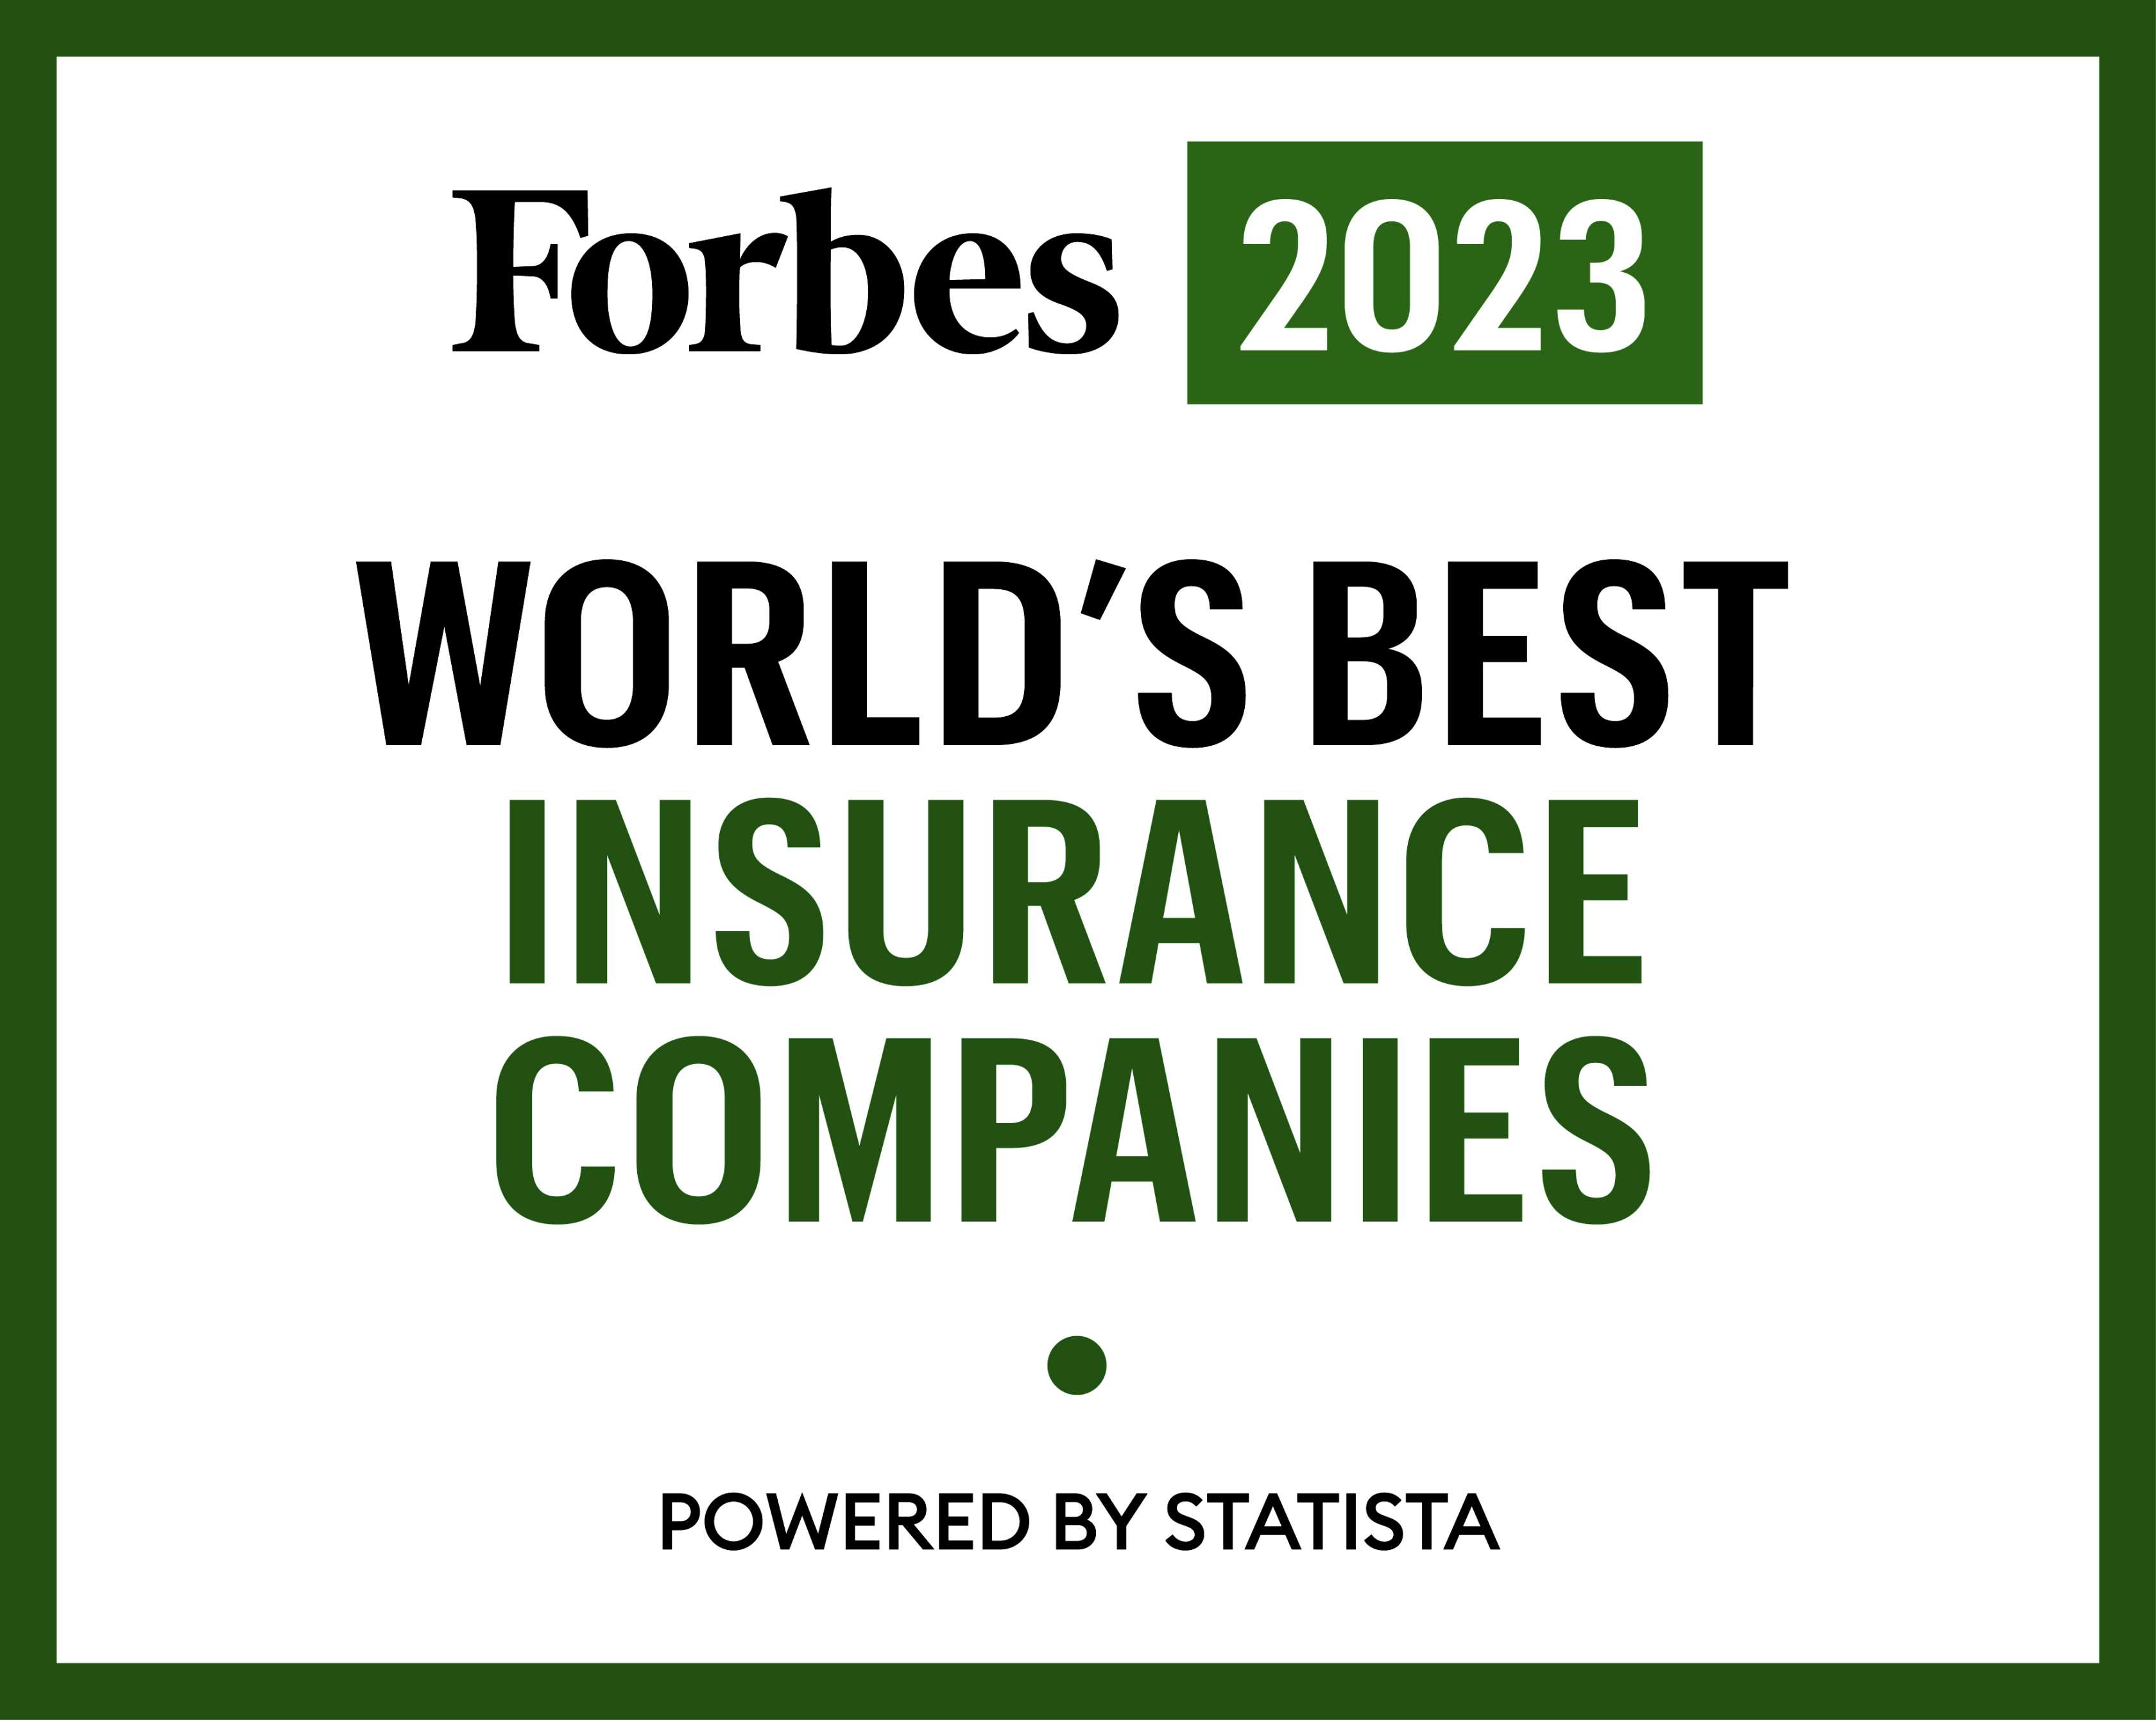 Beste Versicherung laut Forbes